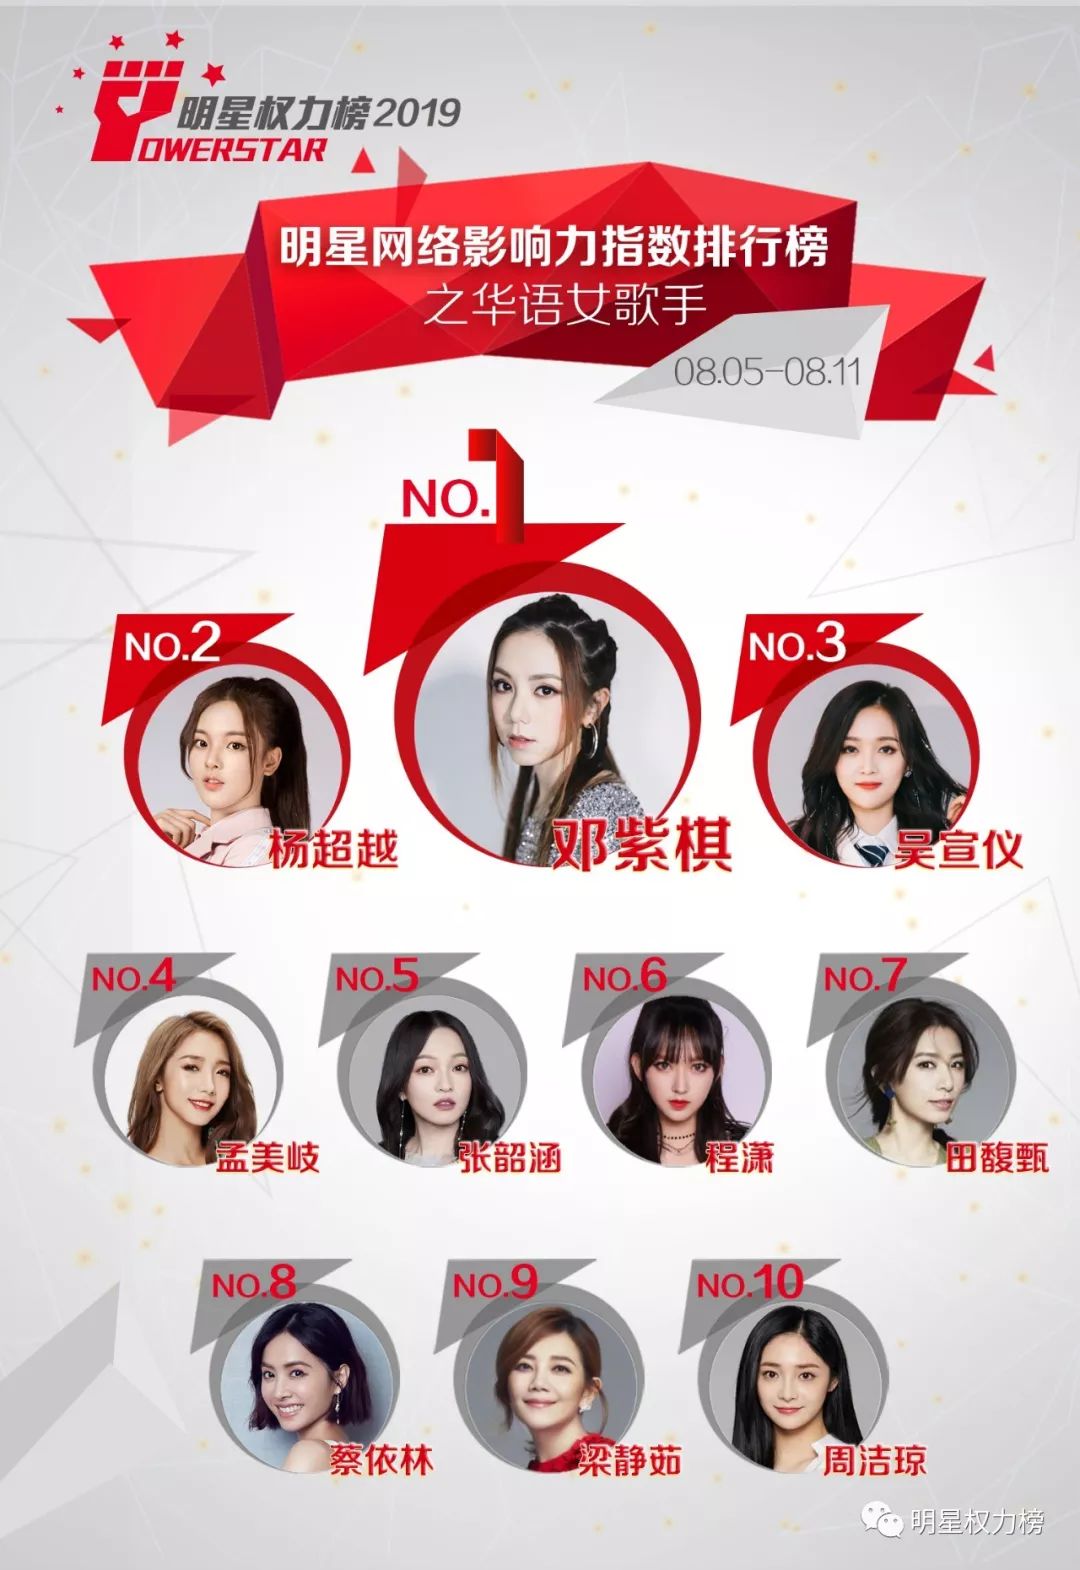 明星网络影响力指数排行榜第212期榜单之华语女歌手Top10